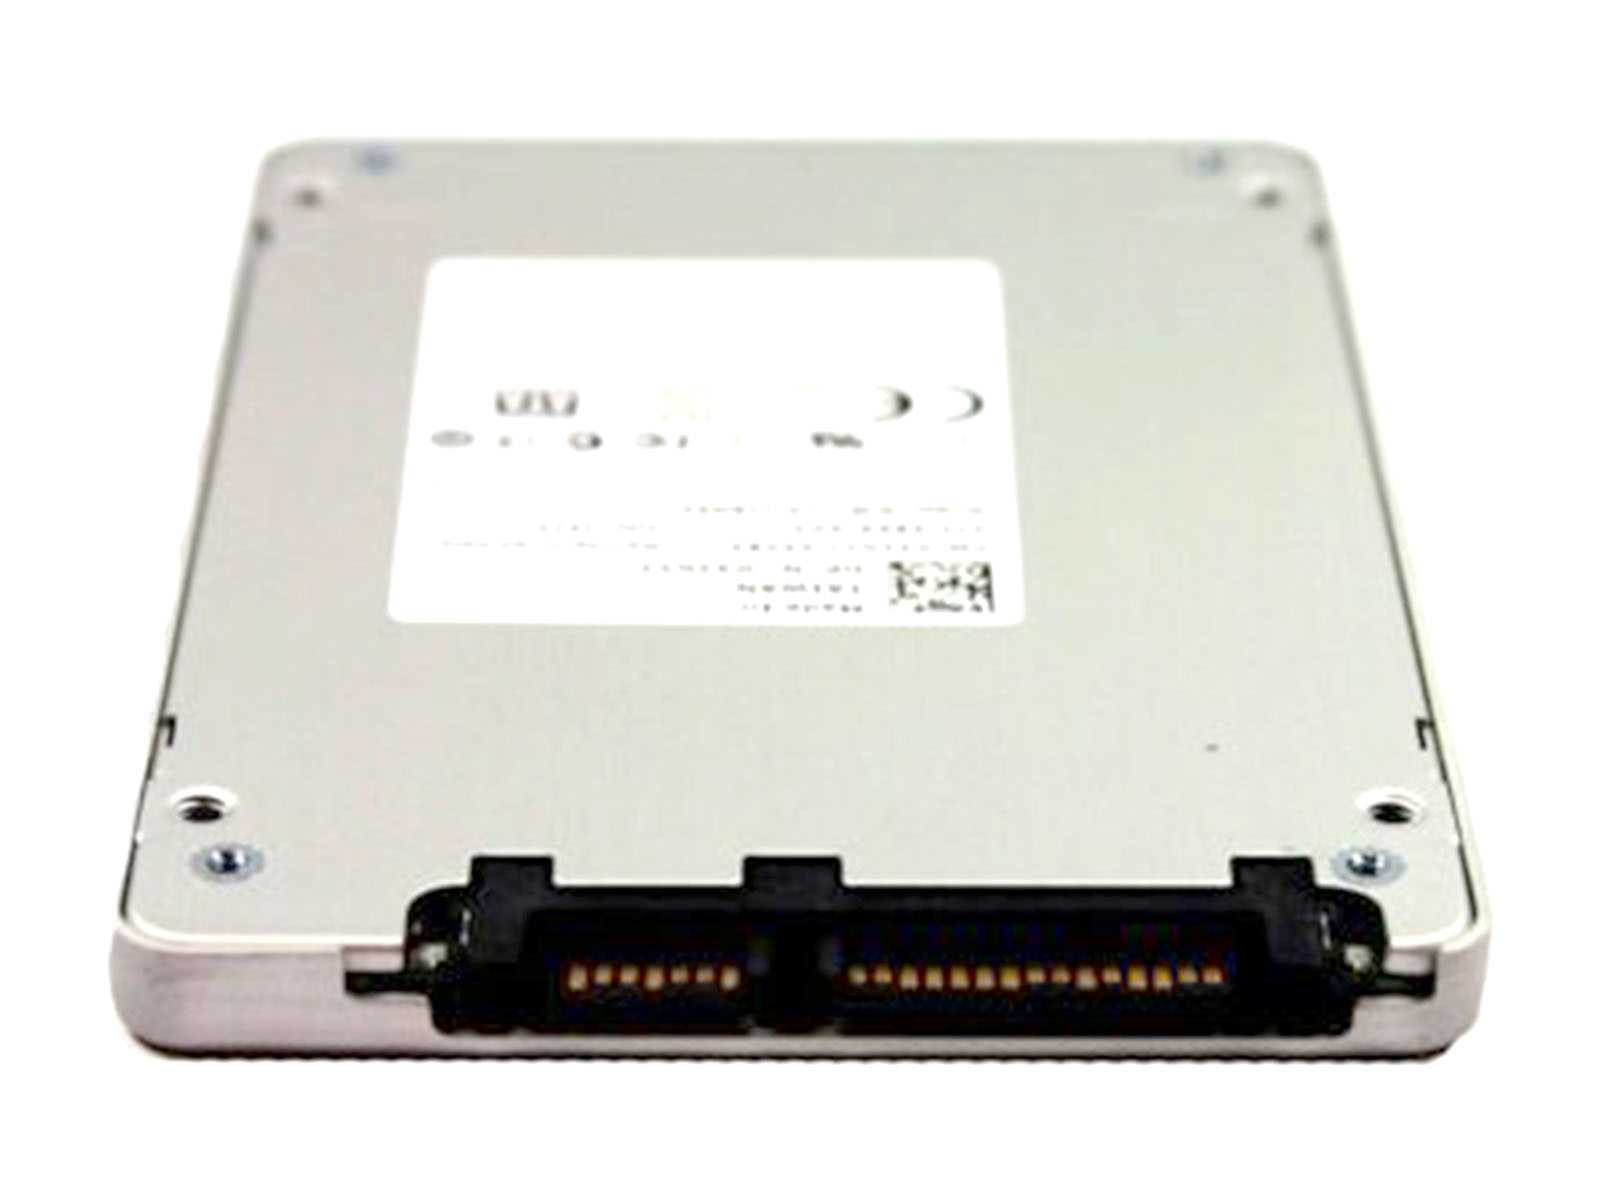 Liteon 2.5" M3S SATA SSD